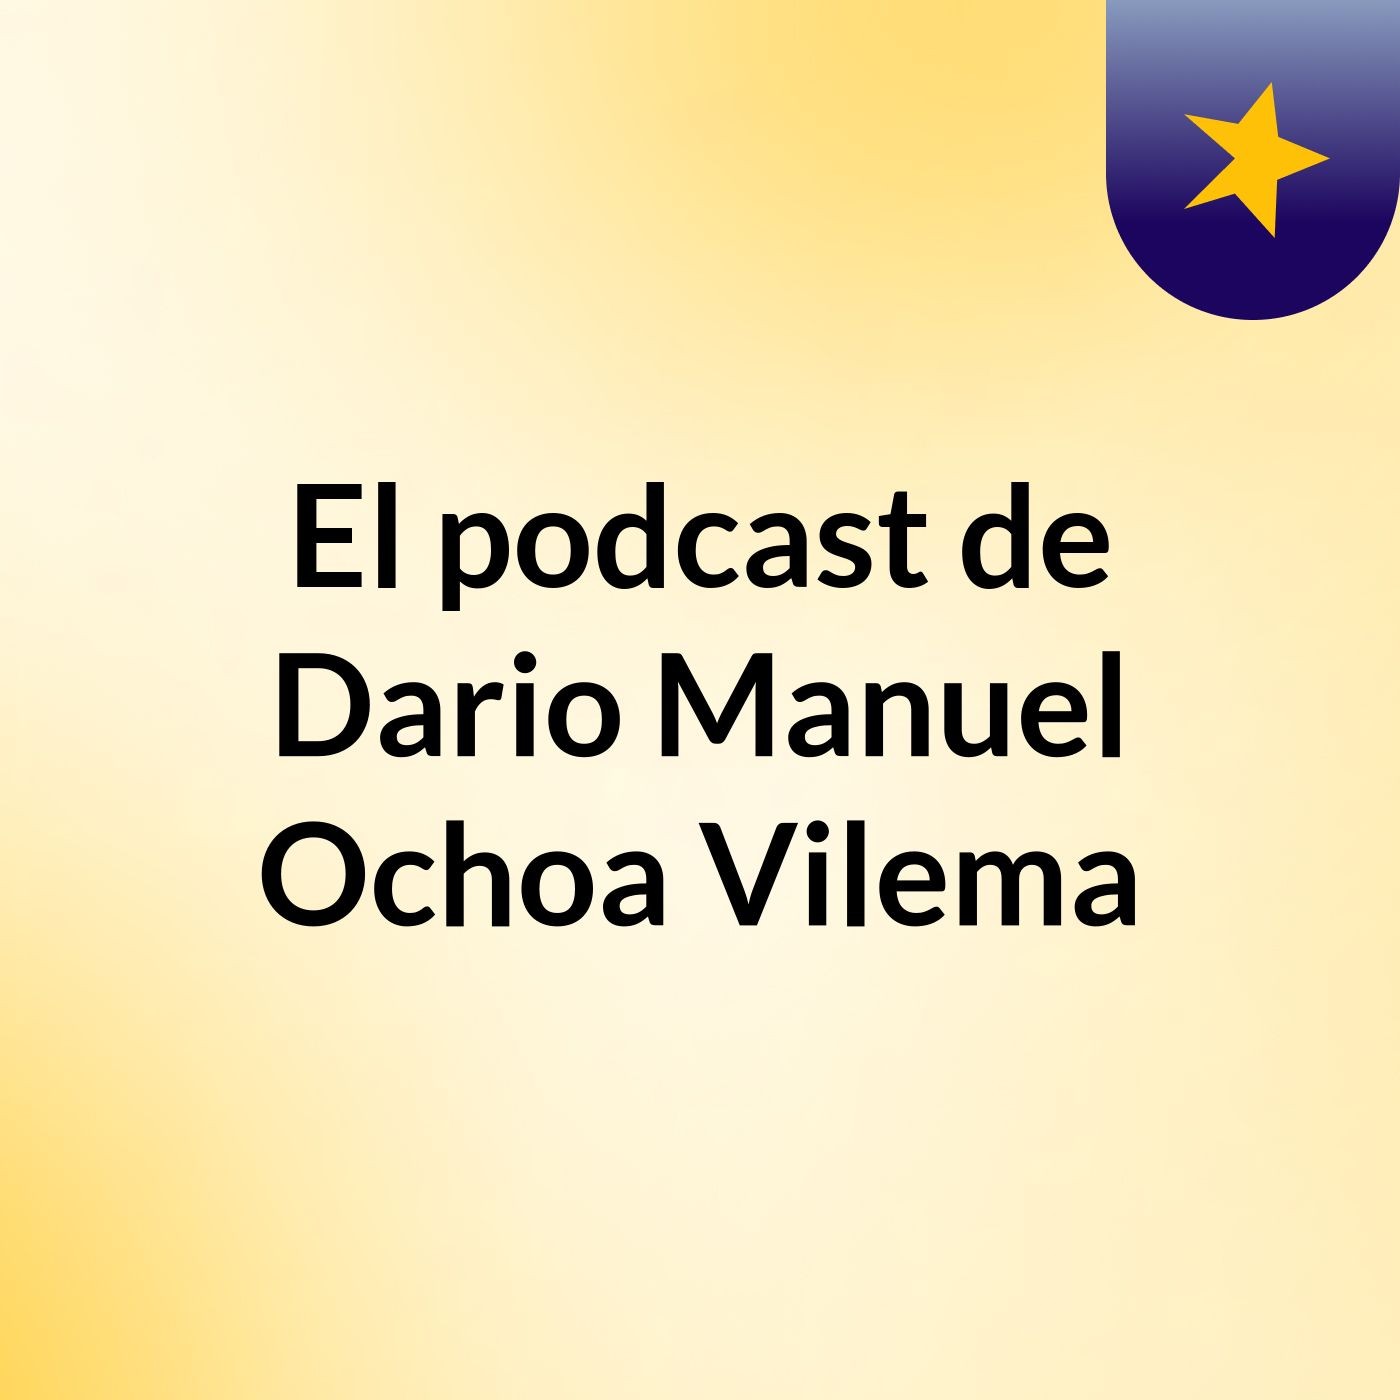 El podcast de Dario Manuel Ochoa Vilema